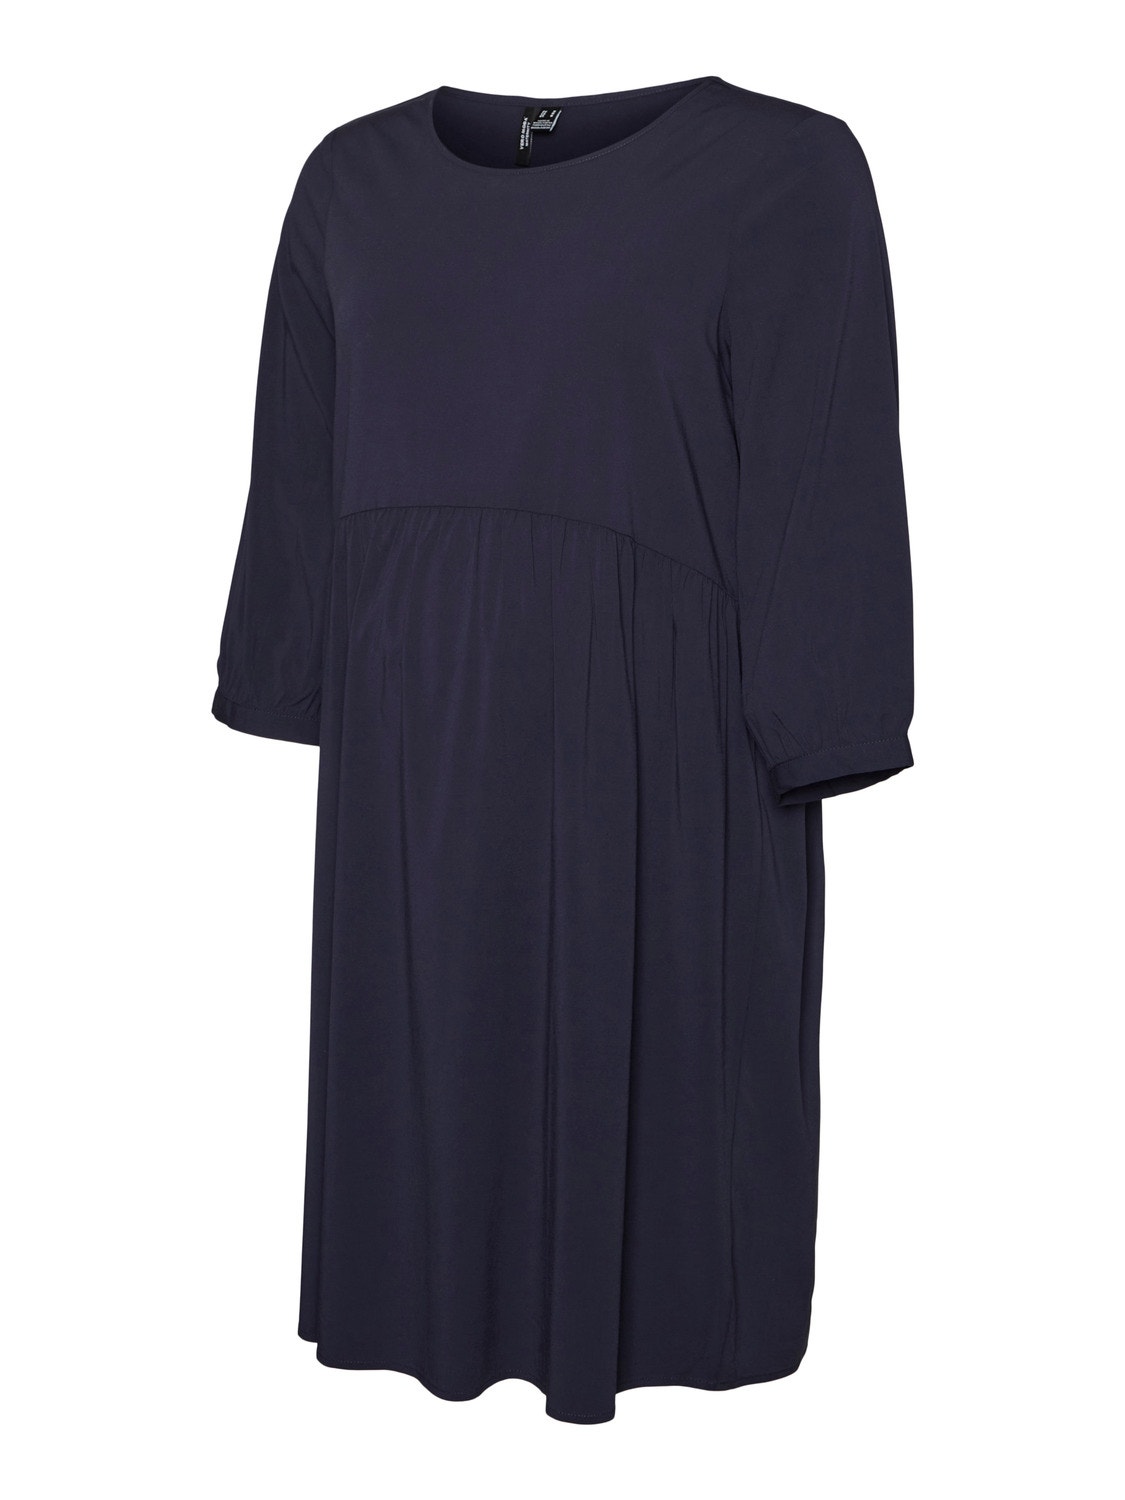 MAMA.LICIOUS vente-kjole -Navy Blazer - 20016016